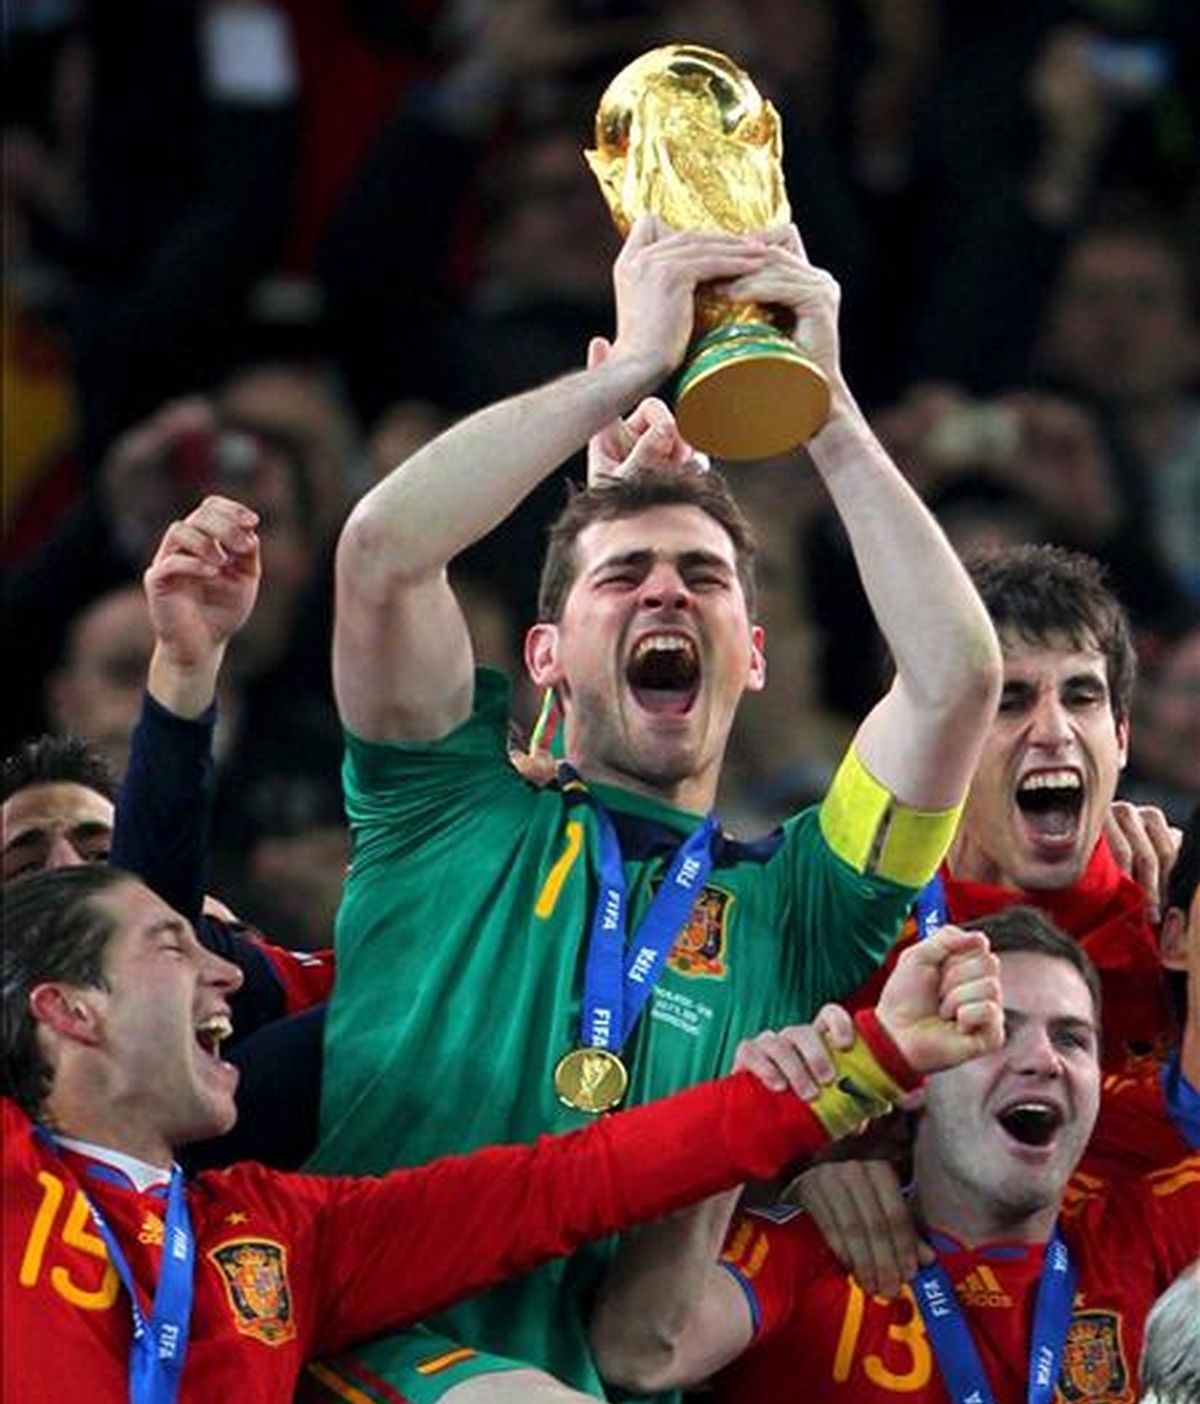 El capitán y portero de la selección española de fútbol Iker Casillas levanta la Copa de campeón del Mundial de Sudáfrica 2010 tras ganar a Holanda en la final en el partido disputado en el estadio Soccer City en Johannesburgo. EFE